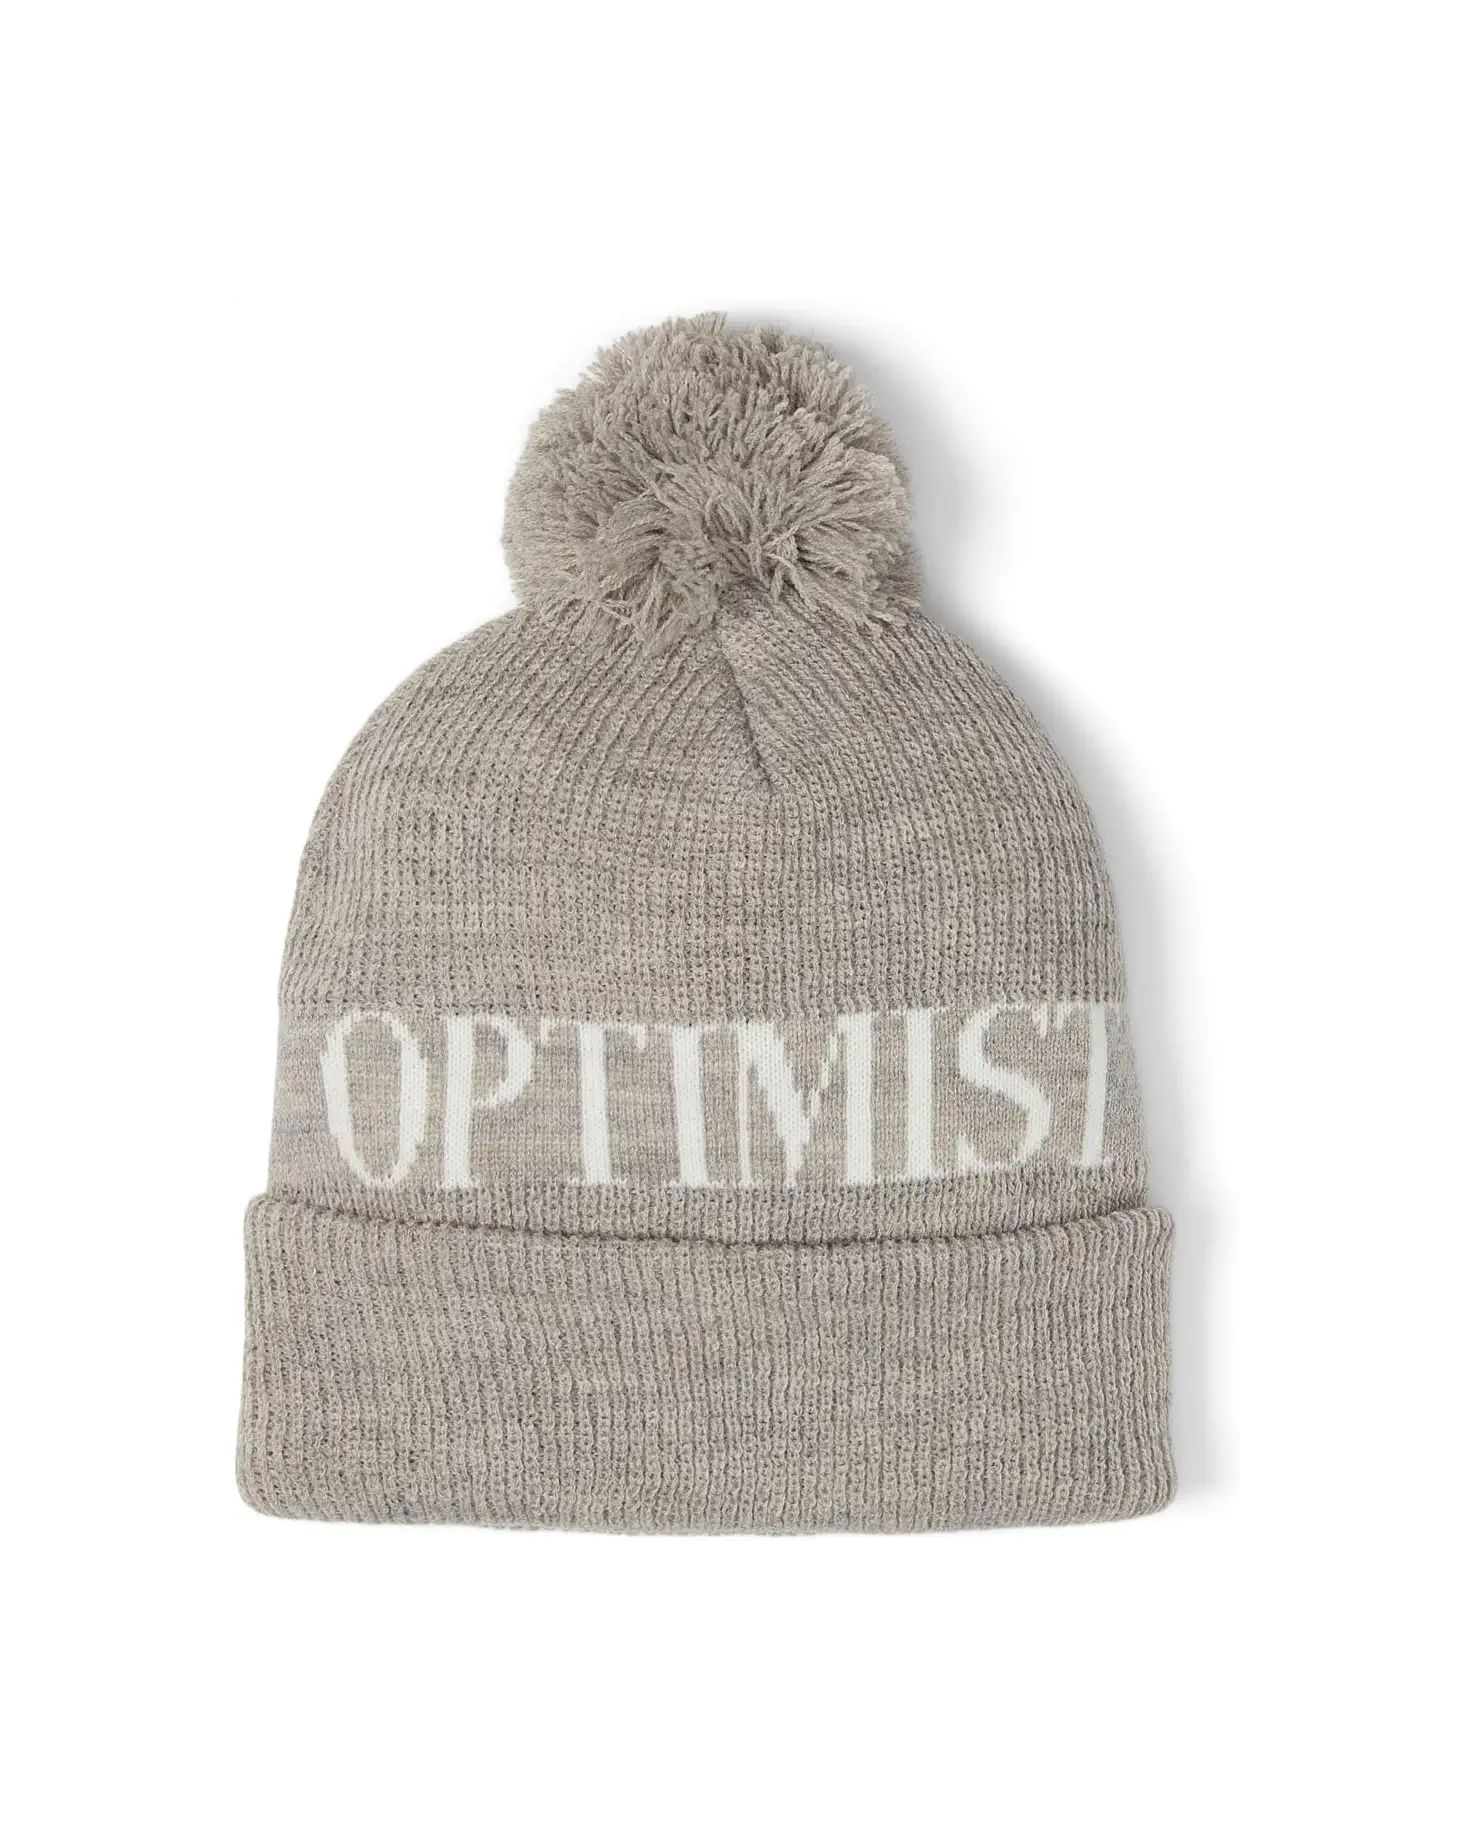 Eternal Optimist Pom-Pom Beanie | Zappos